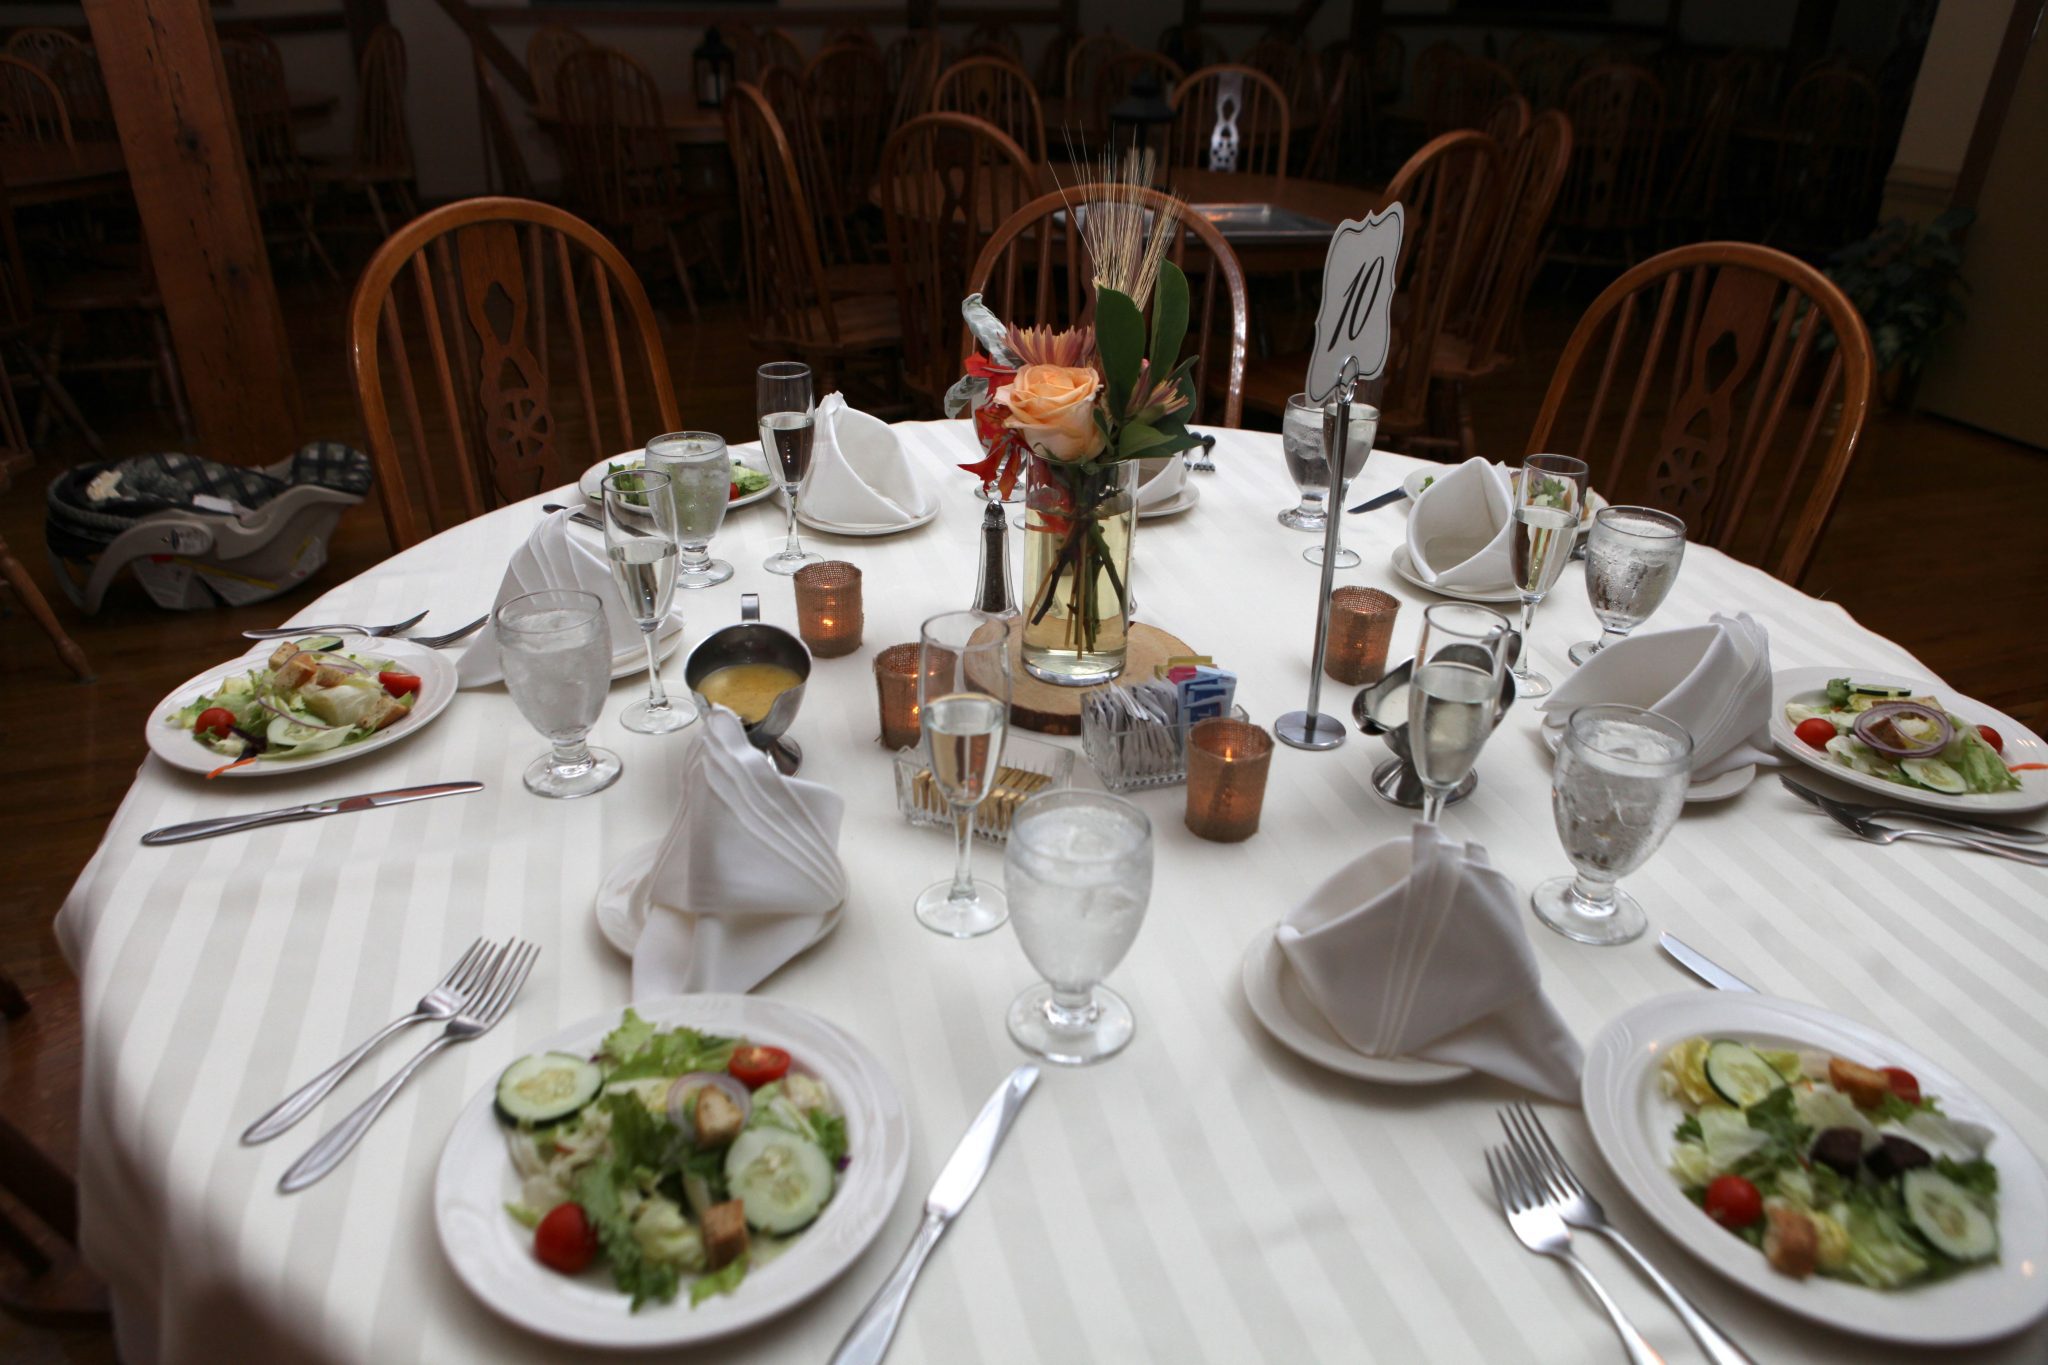 Dinner table setting for wedding in white